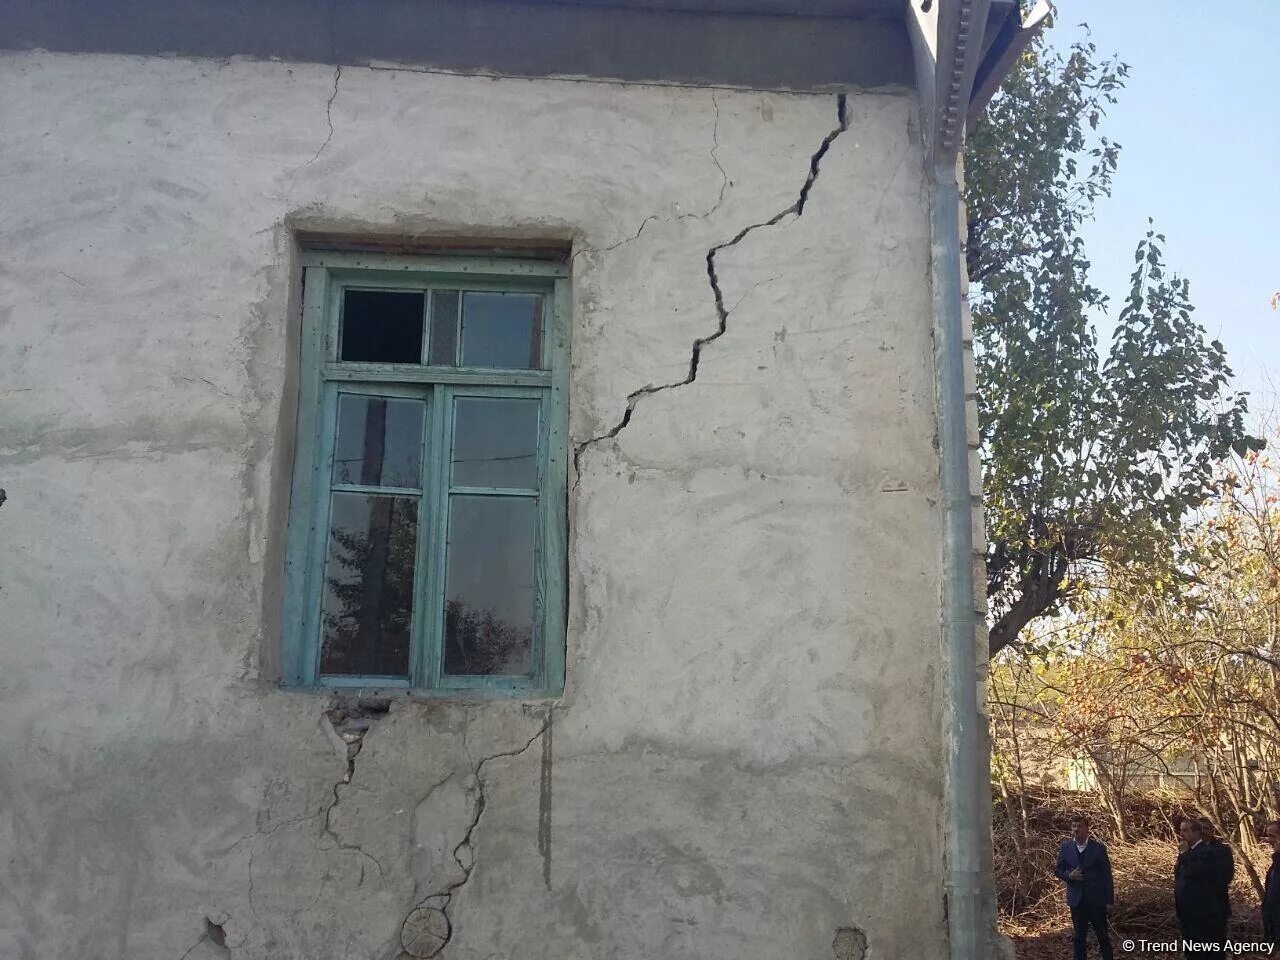 Трещина в доме. Трещина в доме от землетрясения. Трещина в частном доме. Трещины на стенах в доме после землетрясения.